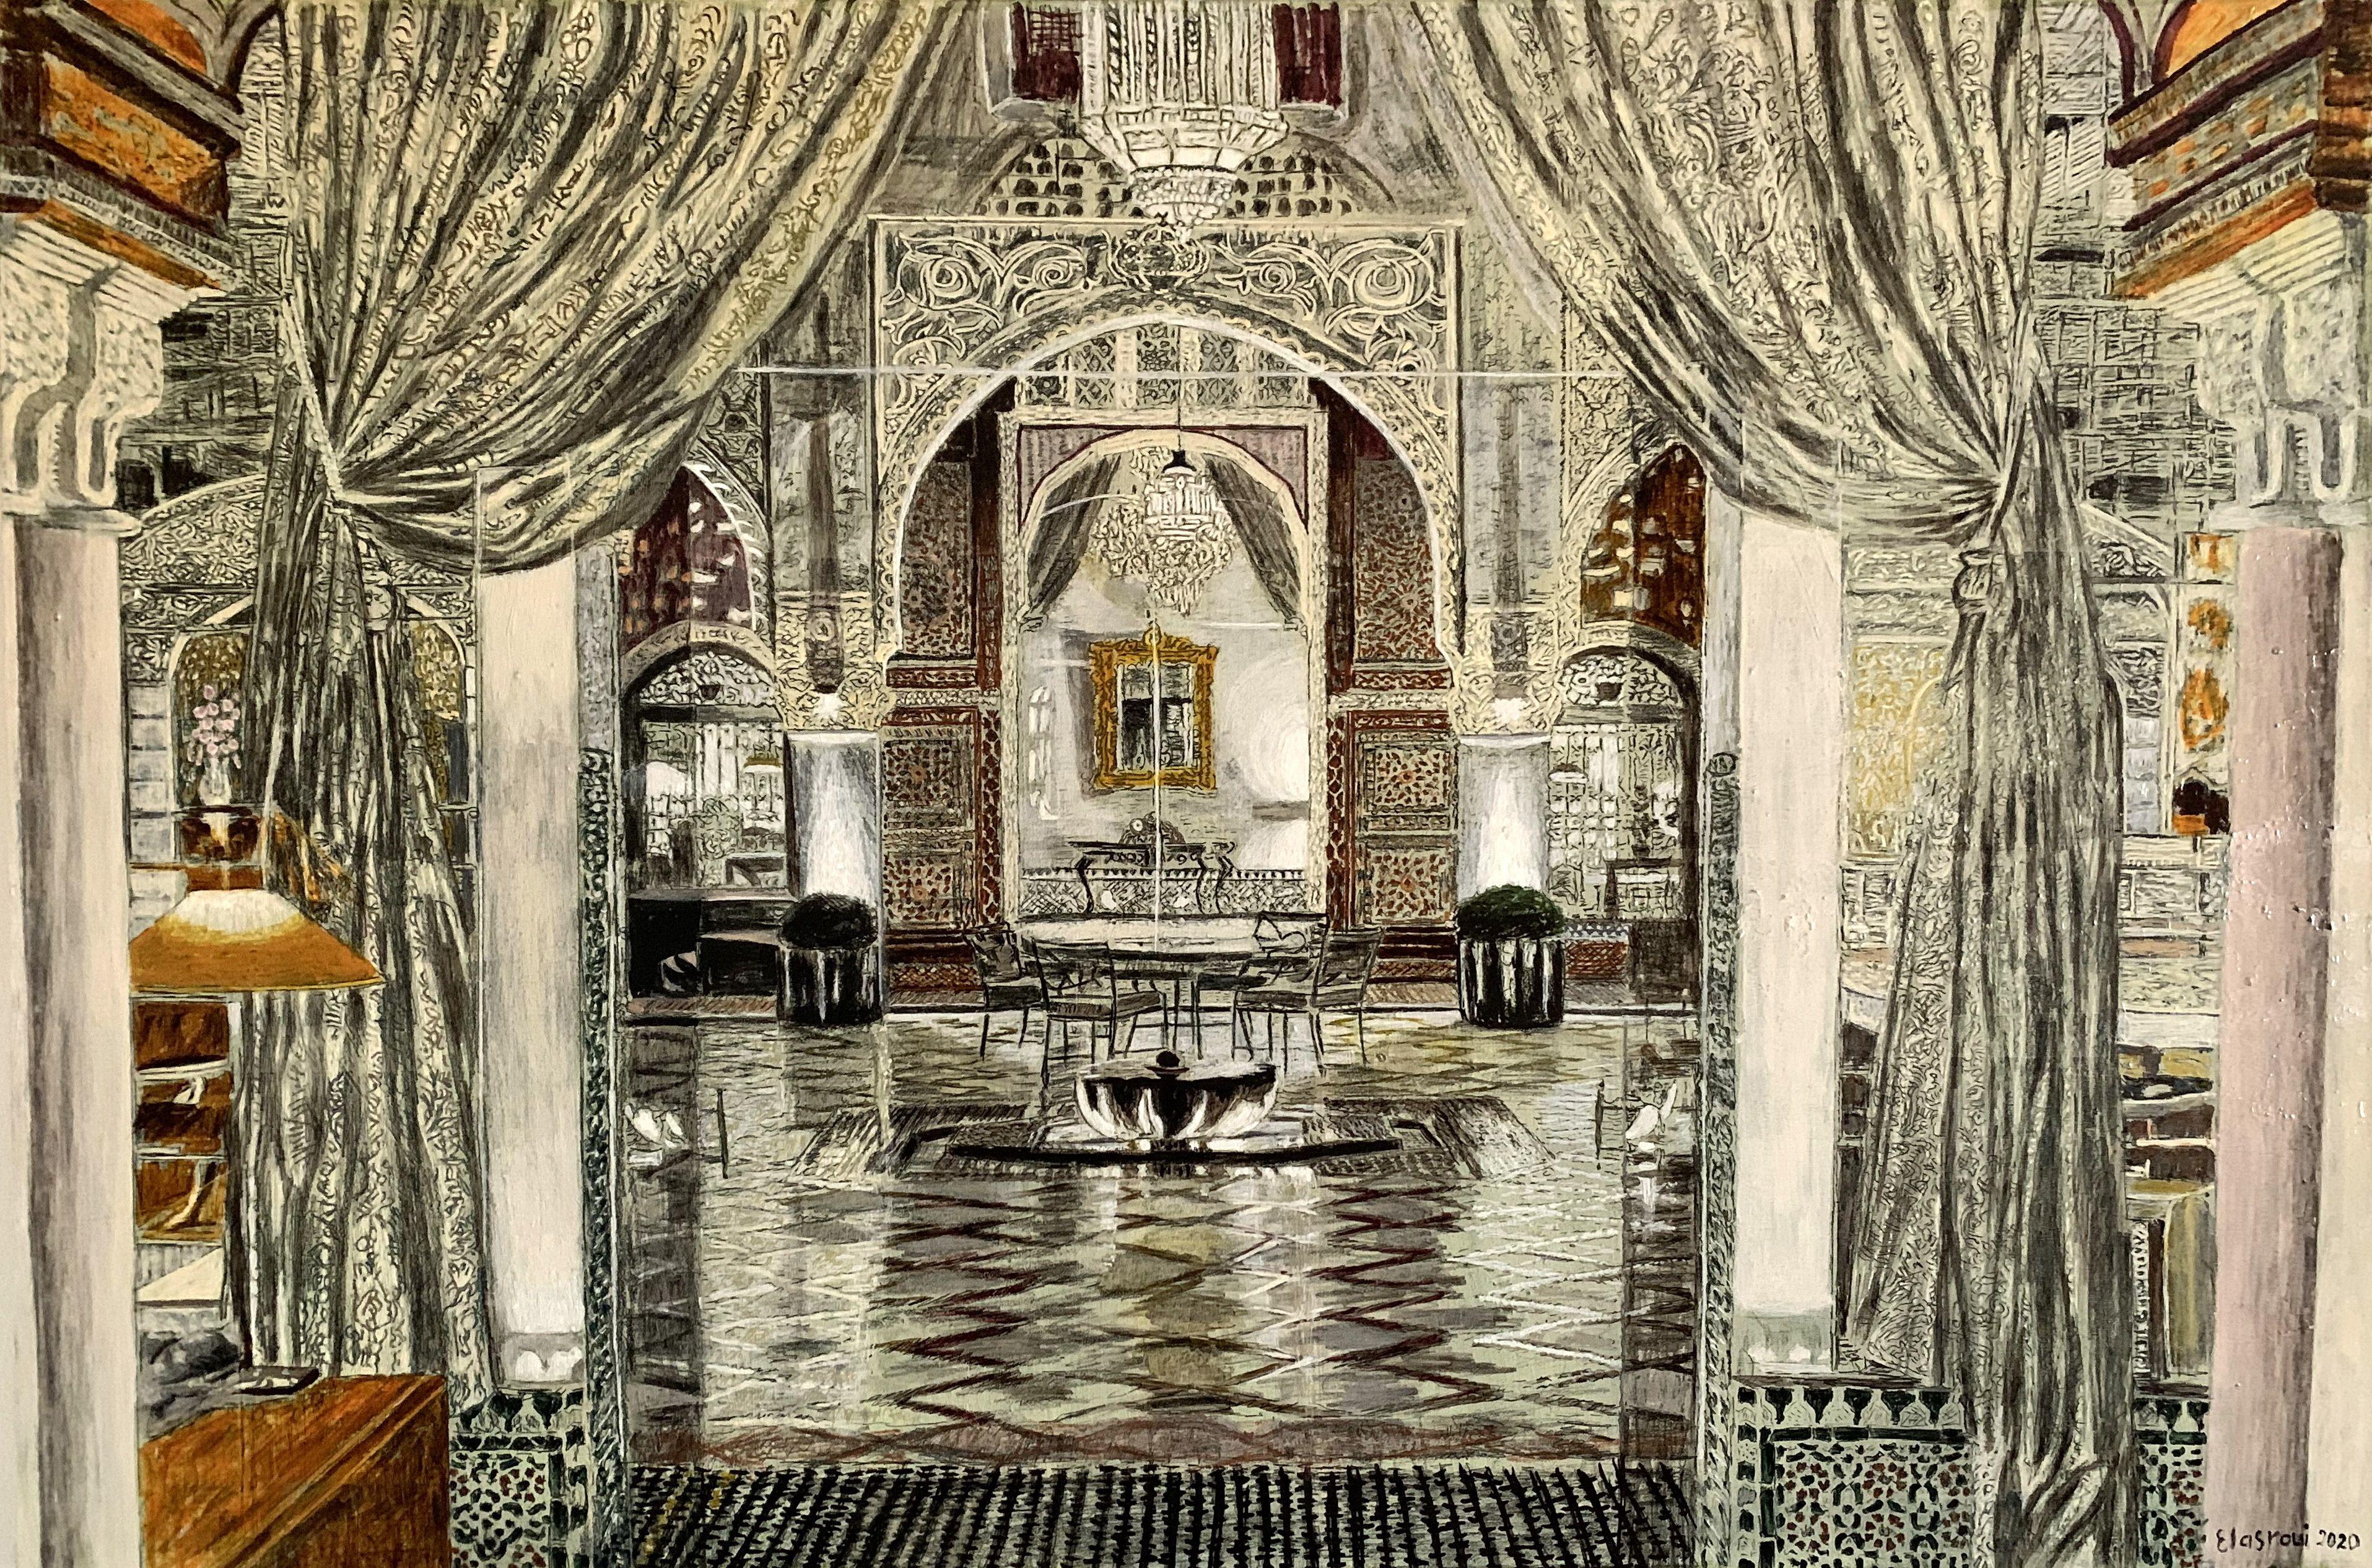 Architecture traditionnelle marocaine -7, peinture, huile sur toile - Painting de Abderrahim El Asraoui